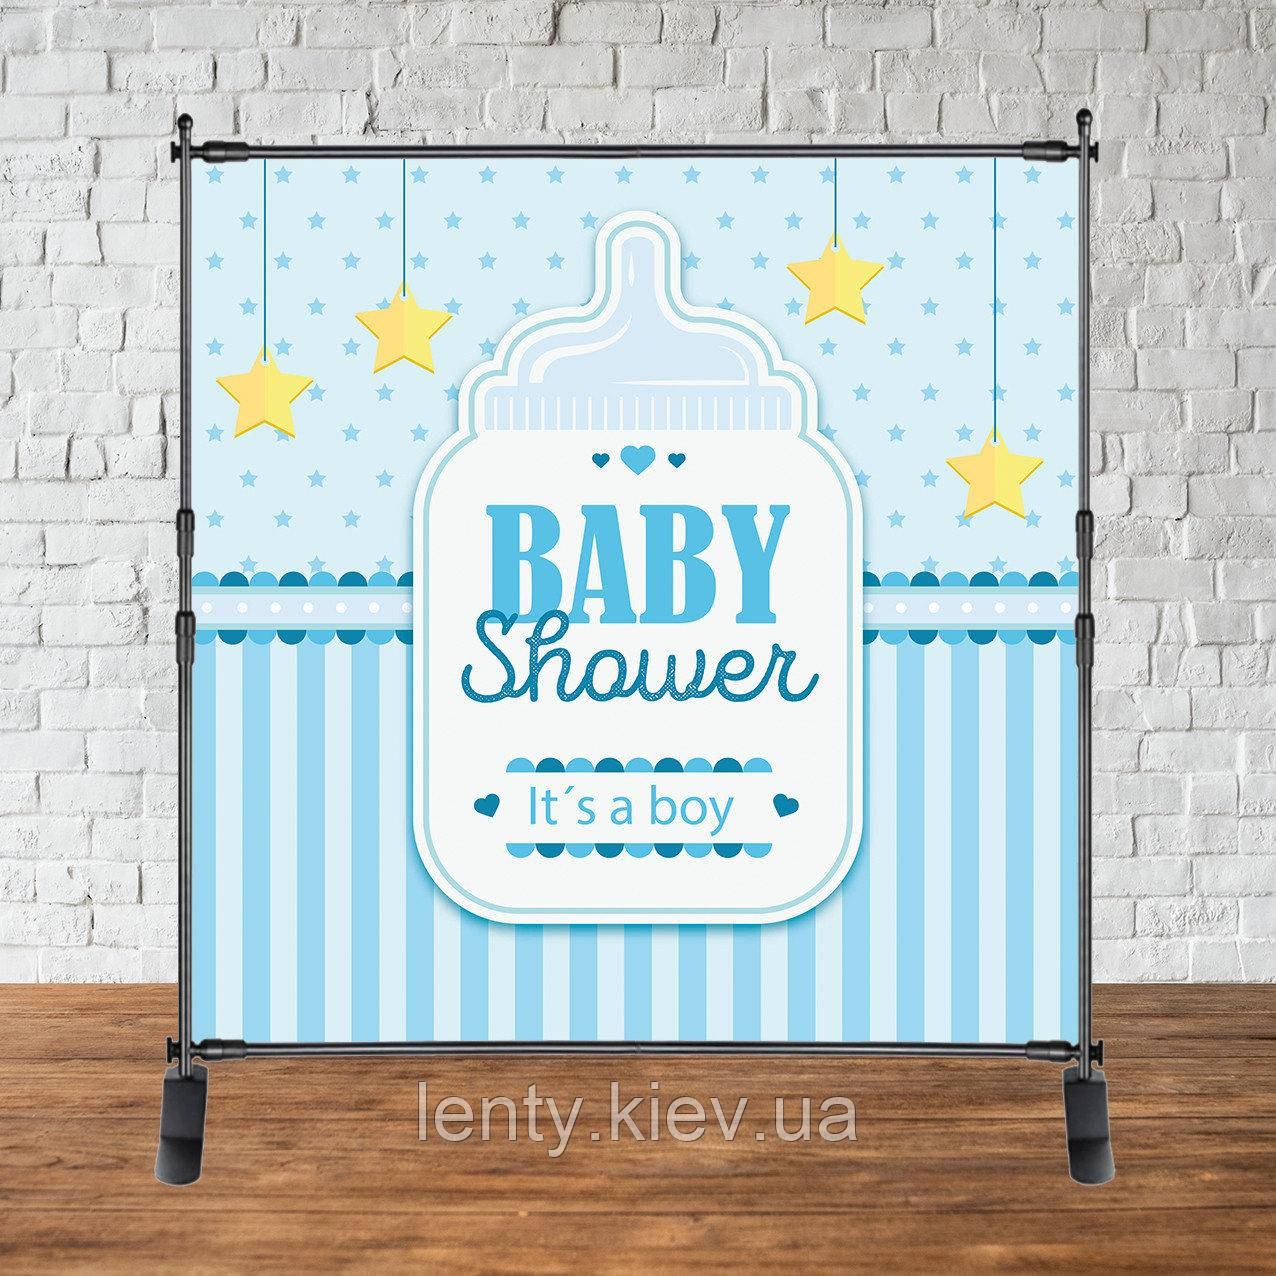 Банер 2х2м "Baby Shower (Бебі шауер/Гендер паті" - Фотозона (вініловий) - Пляшка